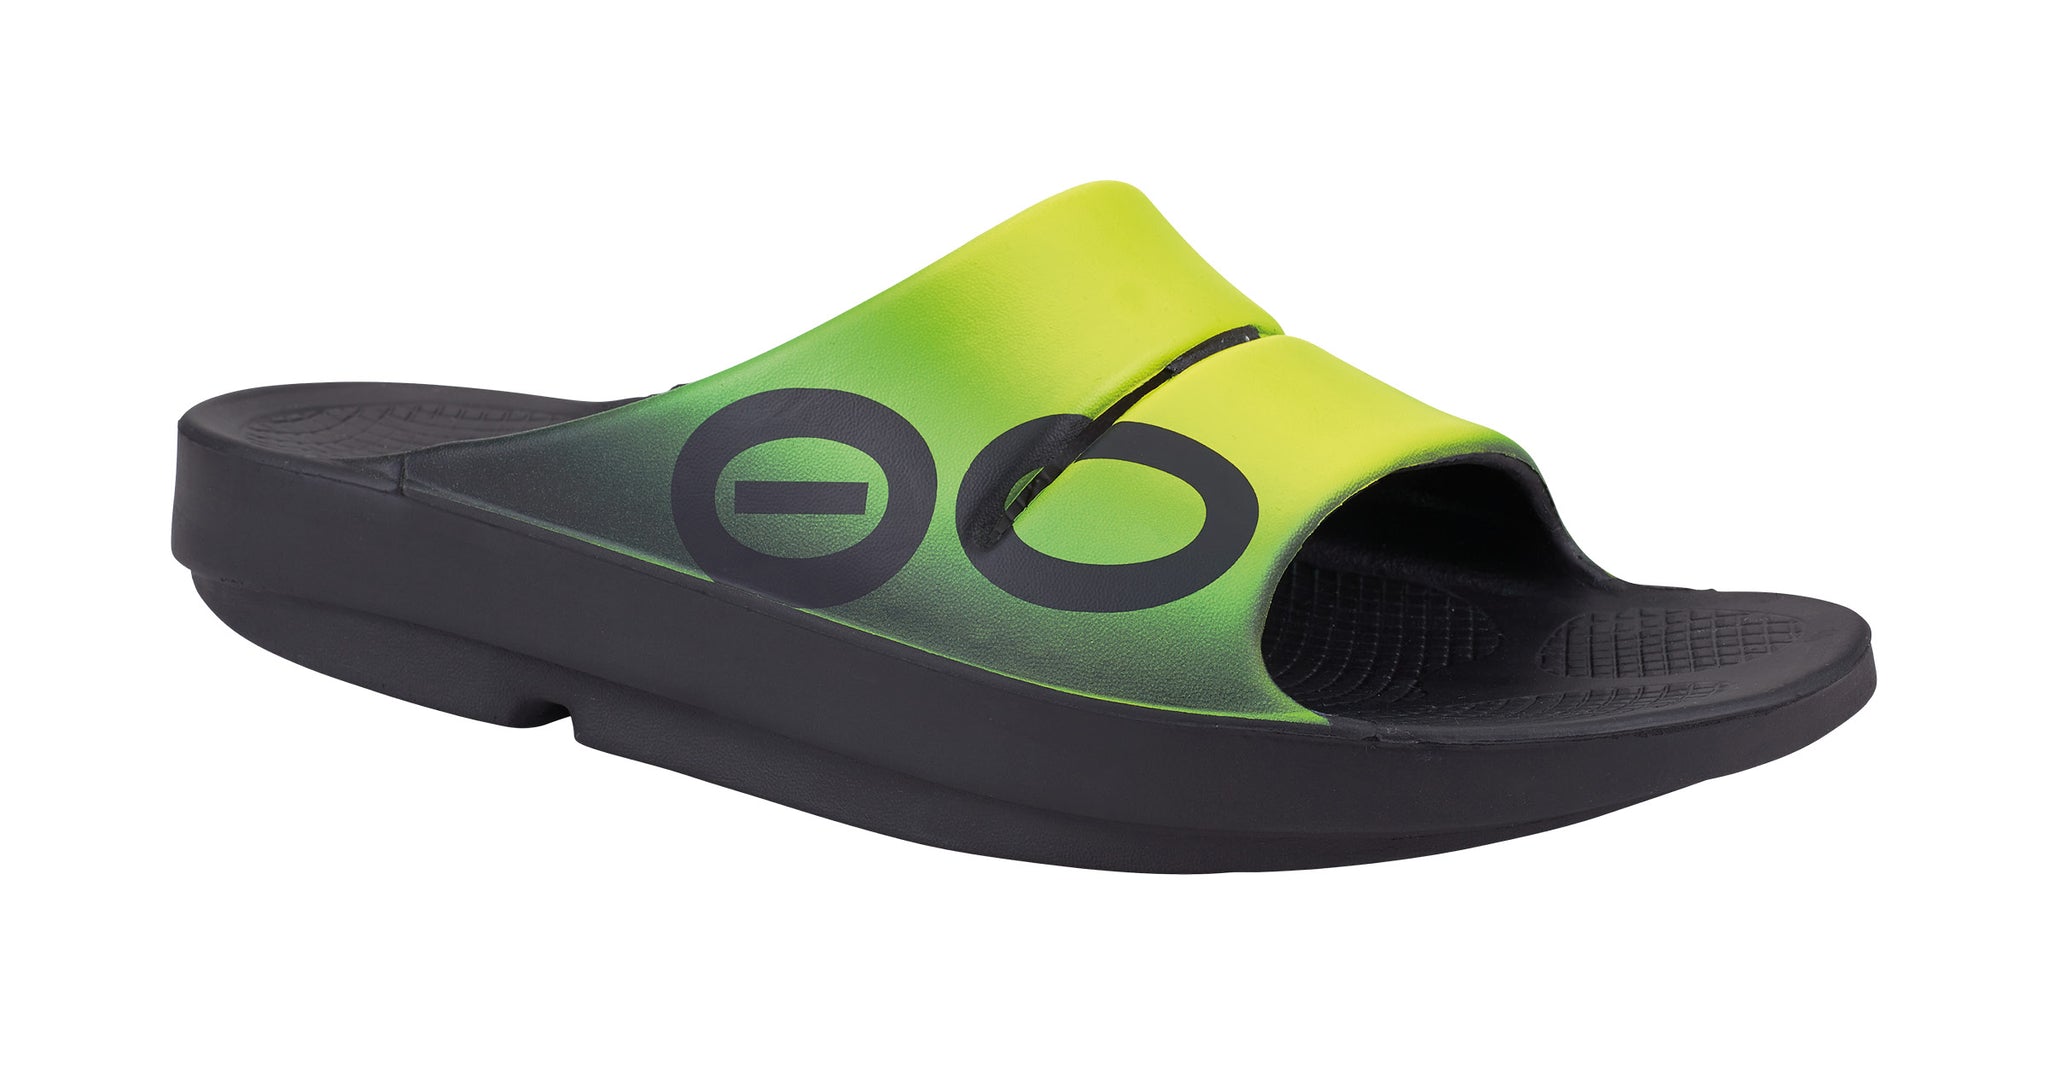 ooahh sport slide sandal